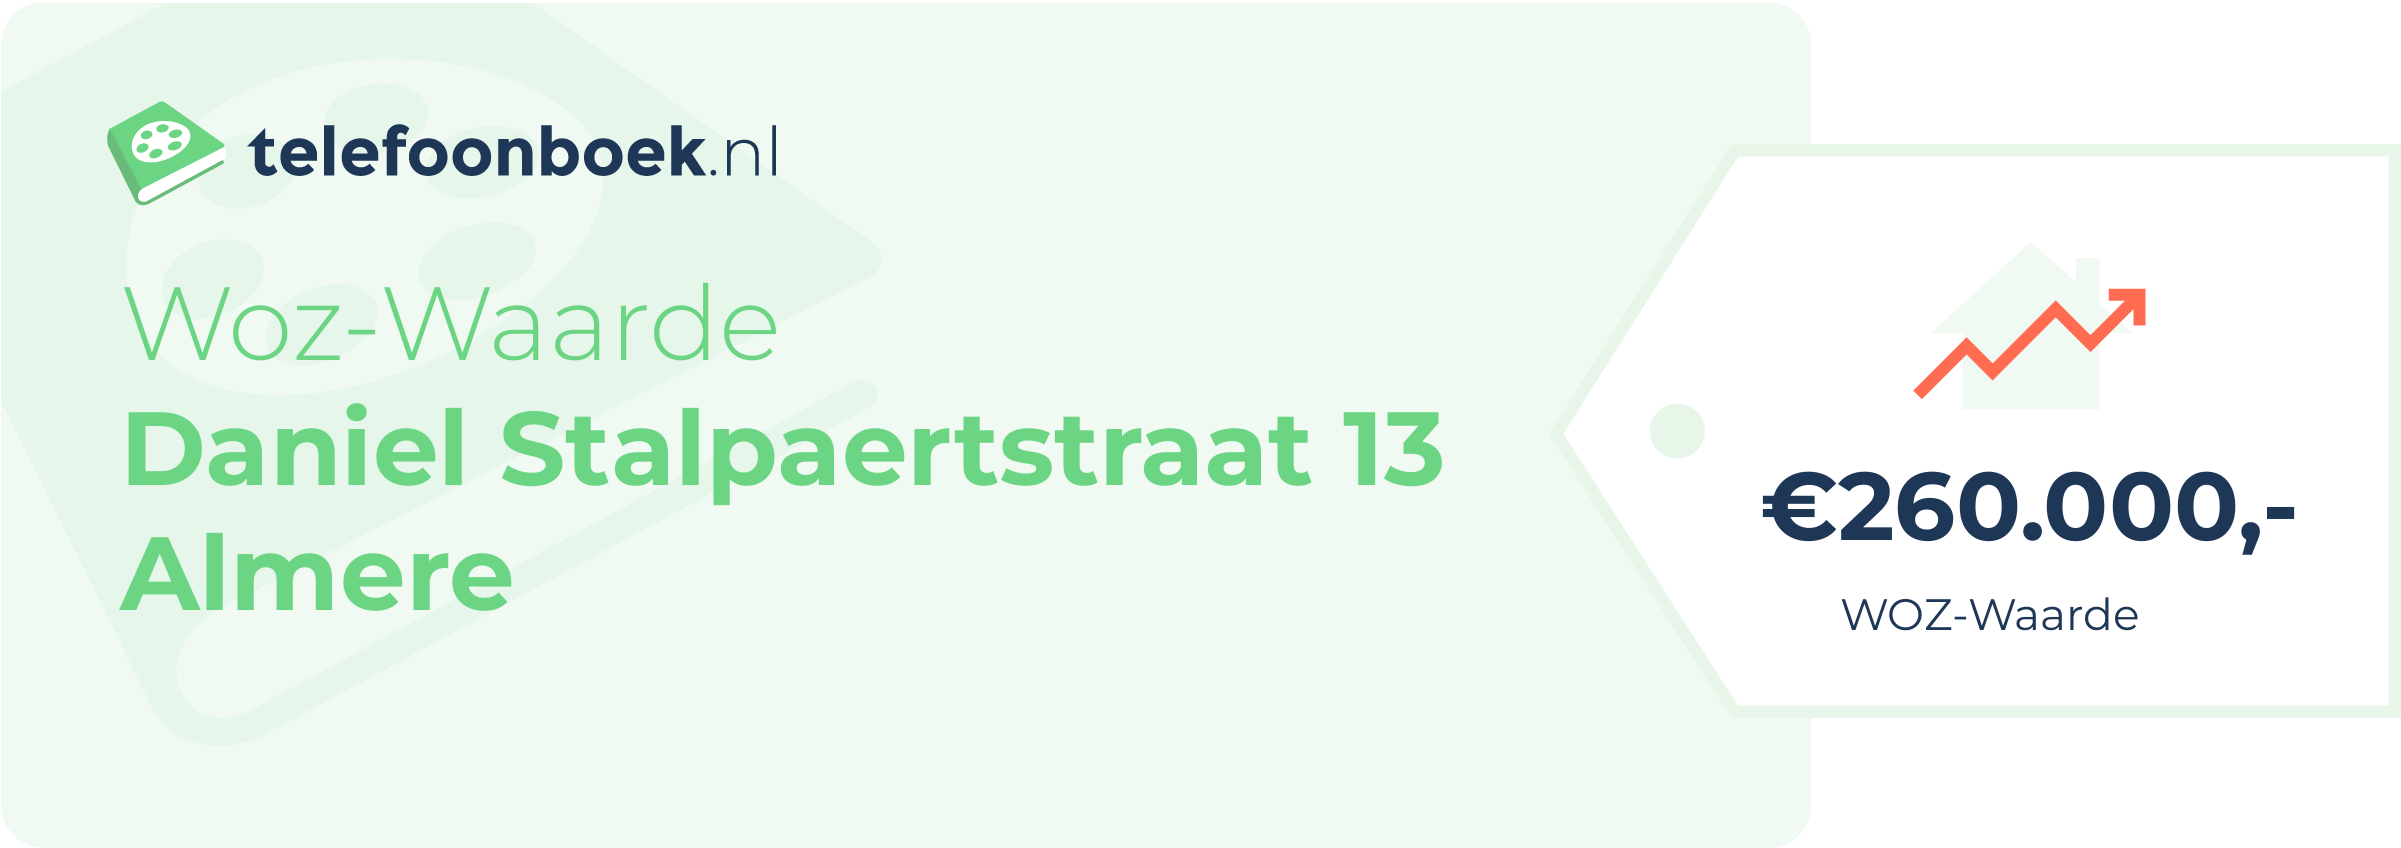 WOZ-waarde Daniel Stalpaertstraat 13 Almere